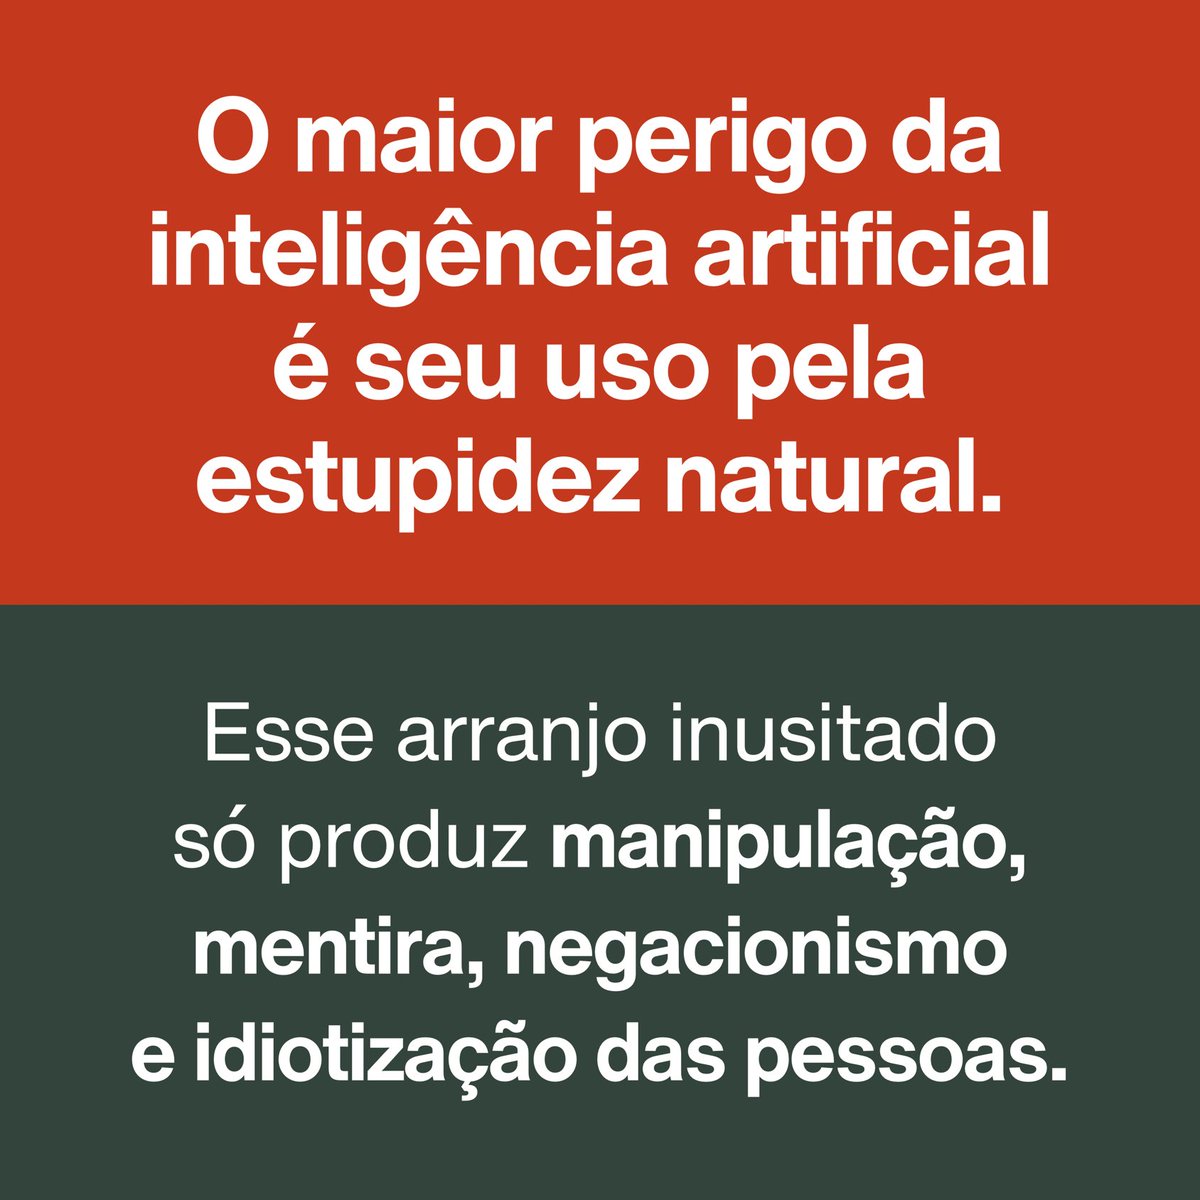 ‘O maior perigo da inteligência artificial é seu uso pela estupidez natural.’